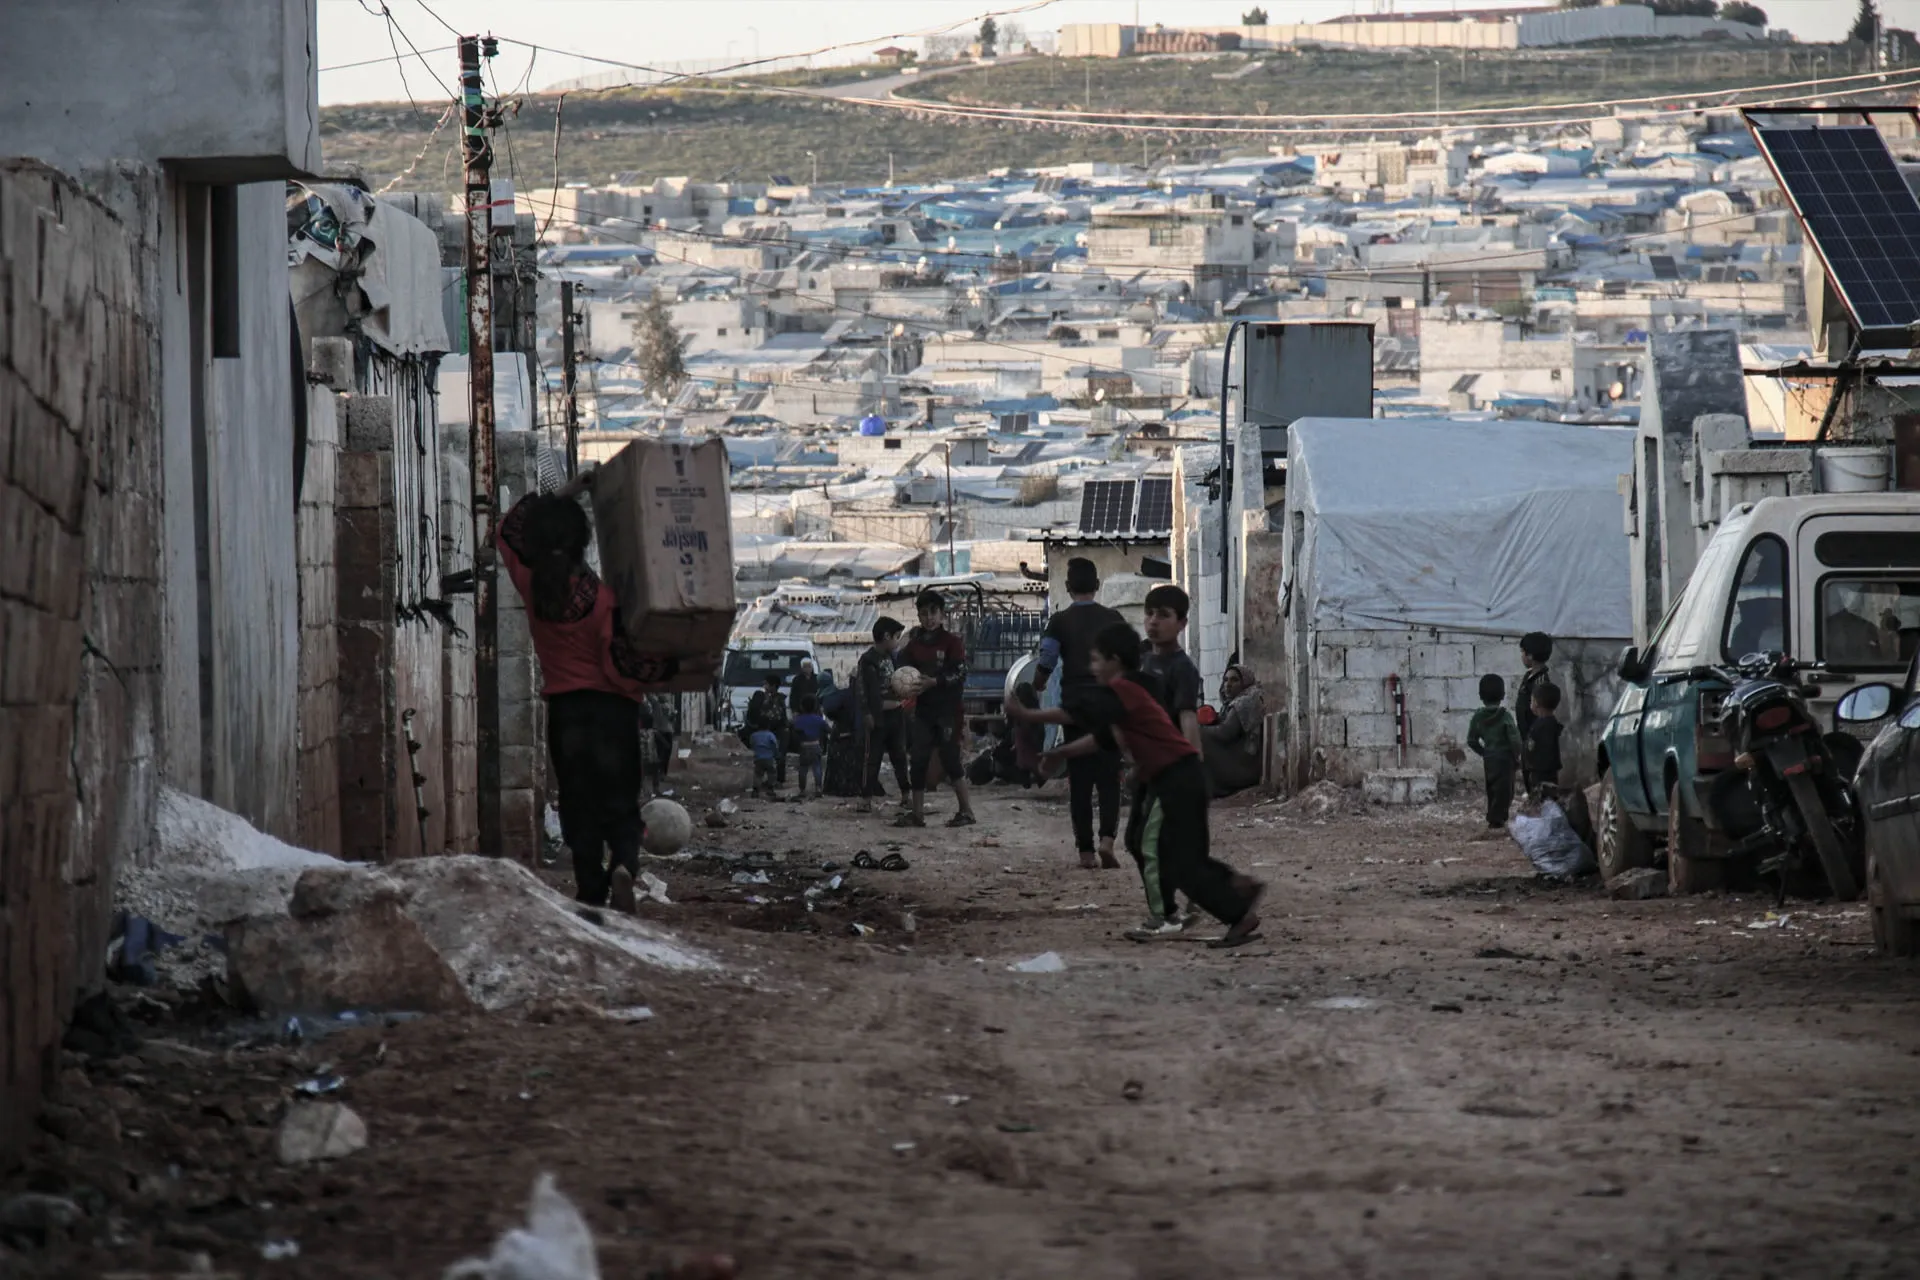 سوريا ضمن عشرة أزمات "لايمكن تجاهلها" وفق تصنيف "لجنة الإنقاذ الدولية"